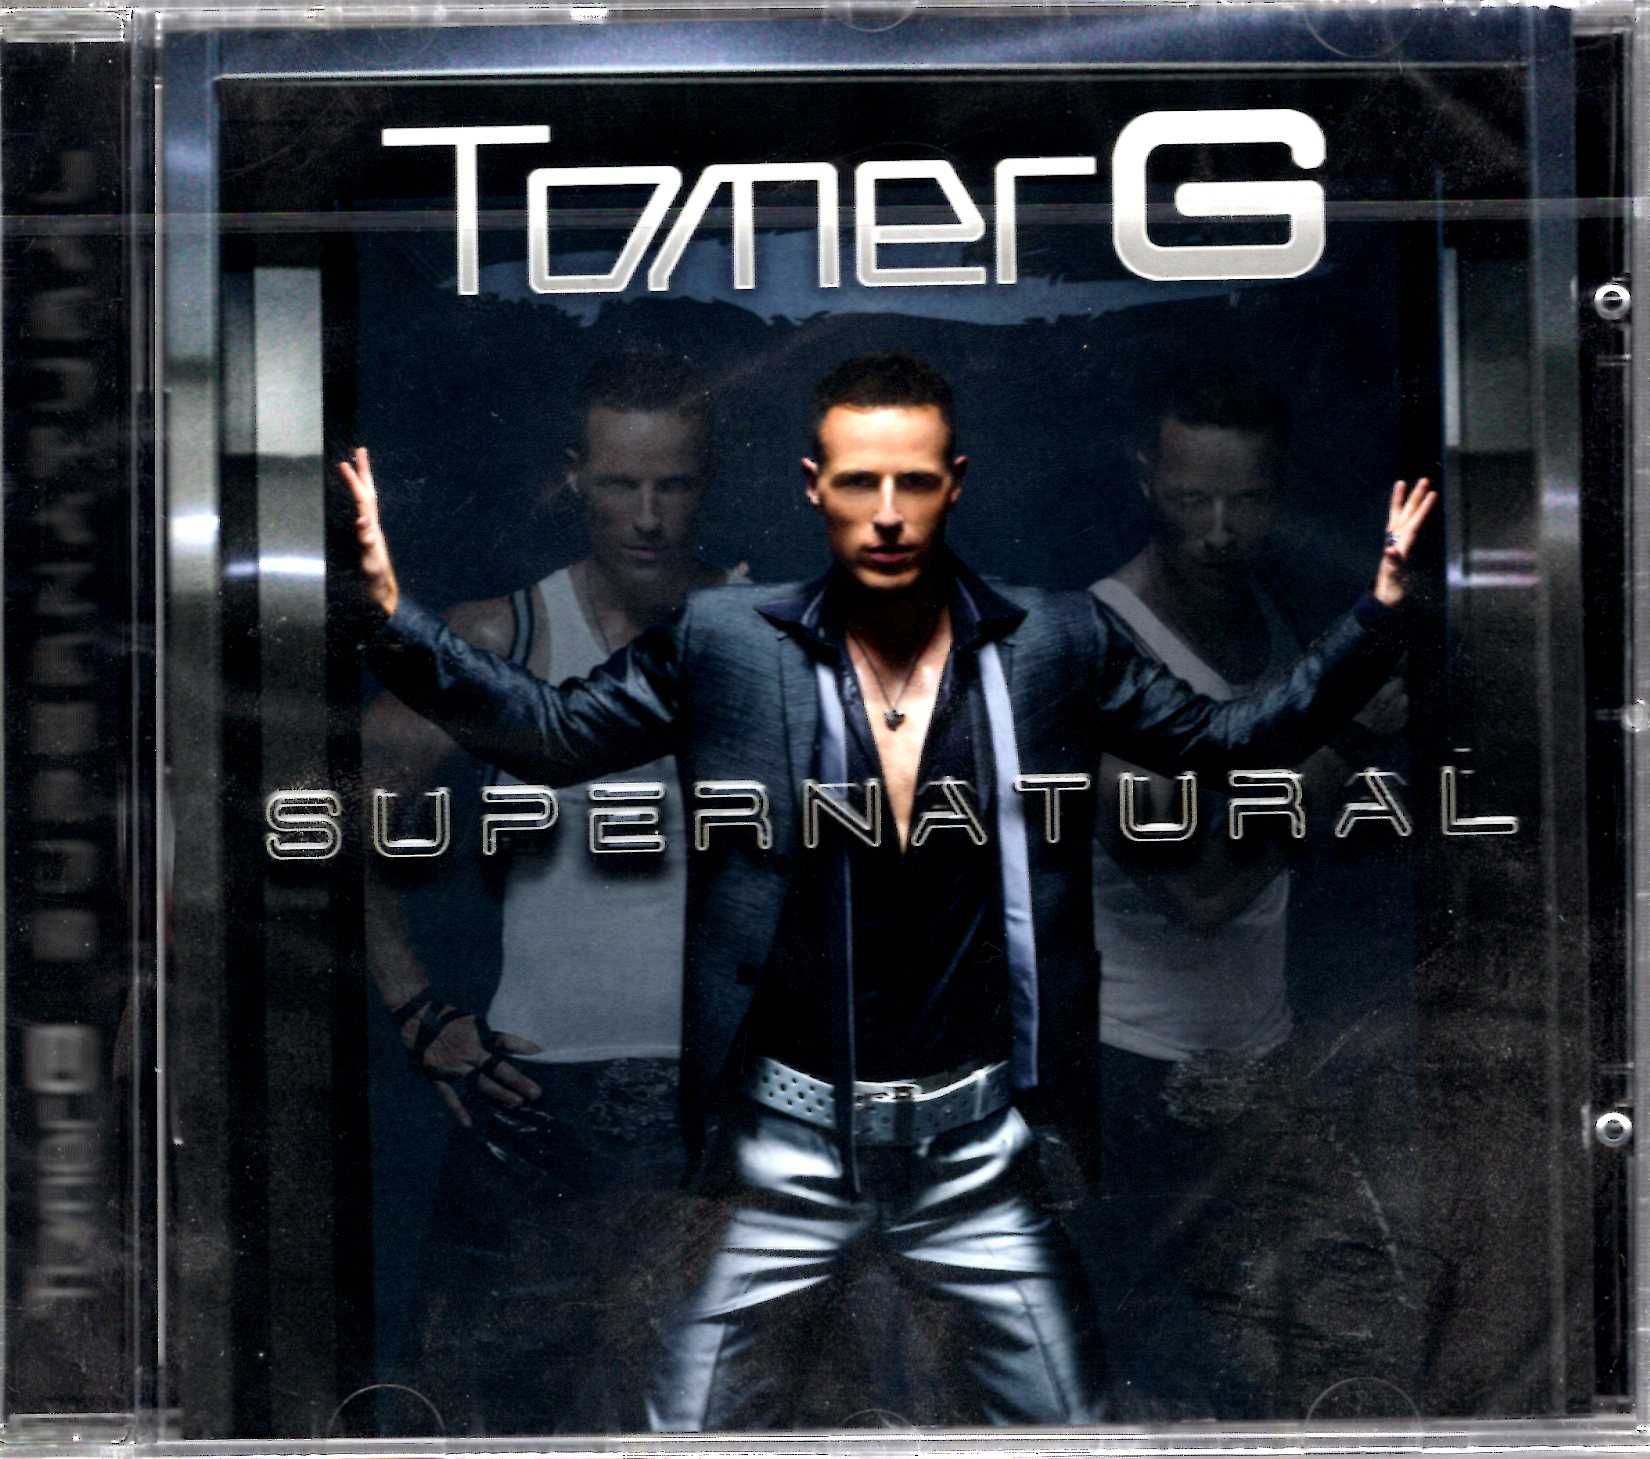 Tomer G - Supernatural (CD)